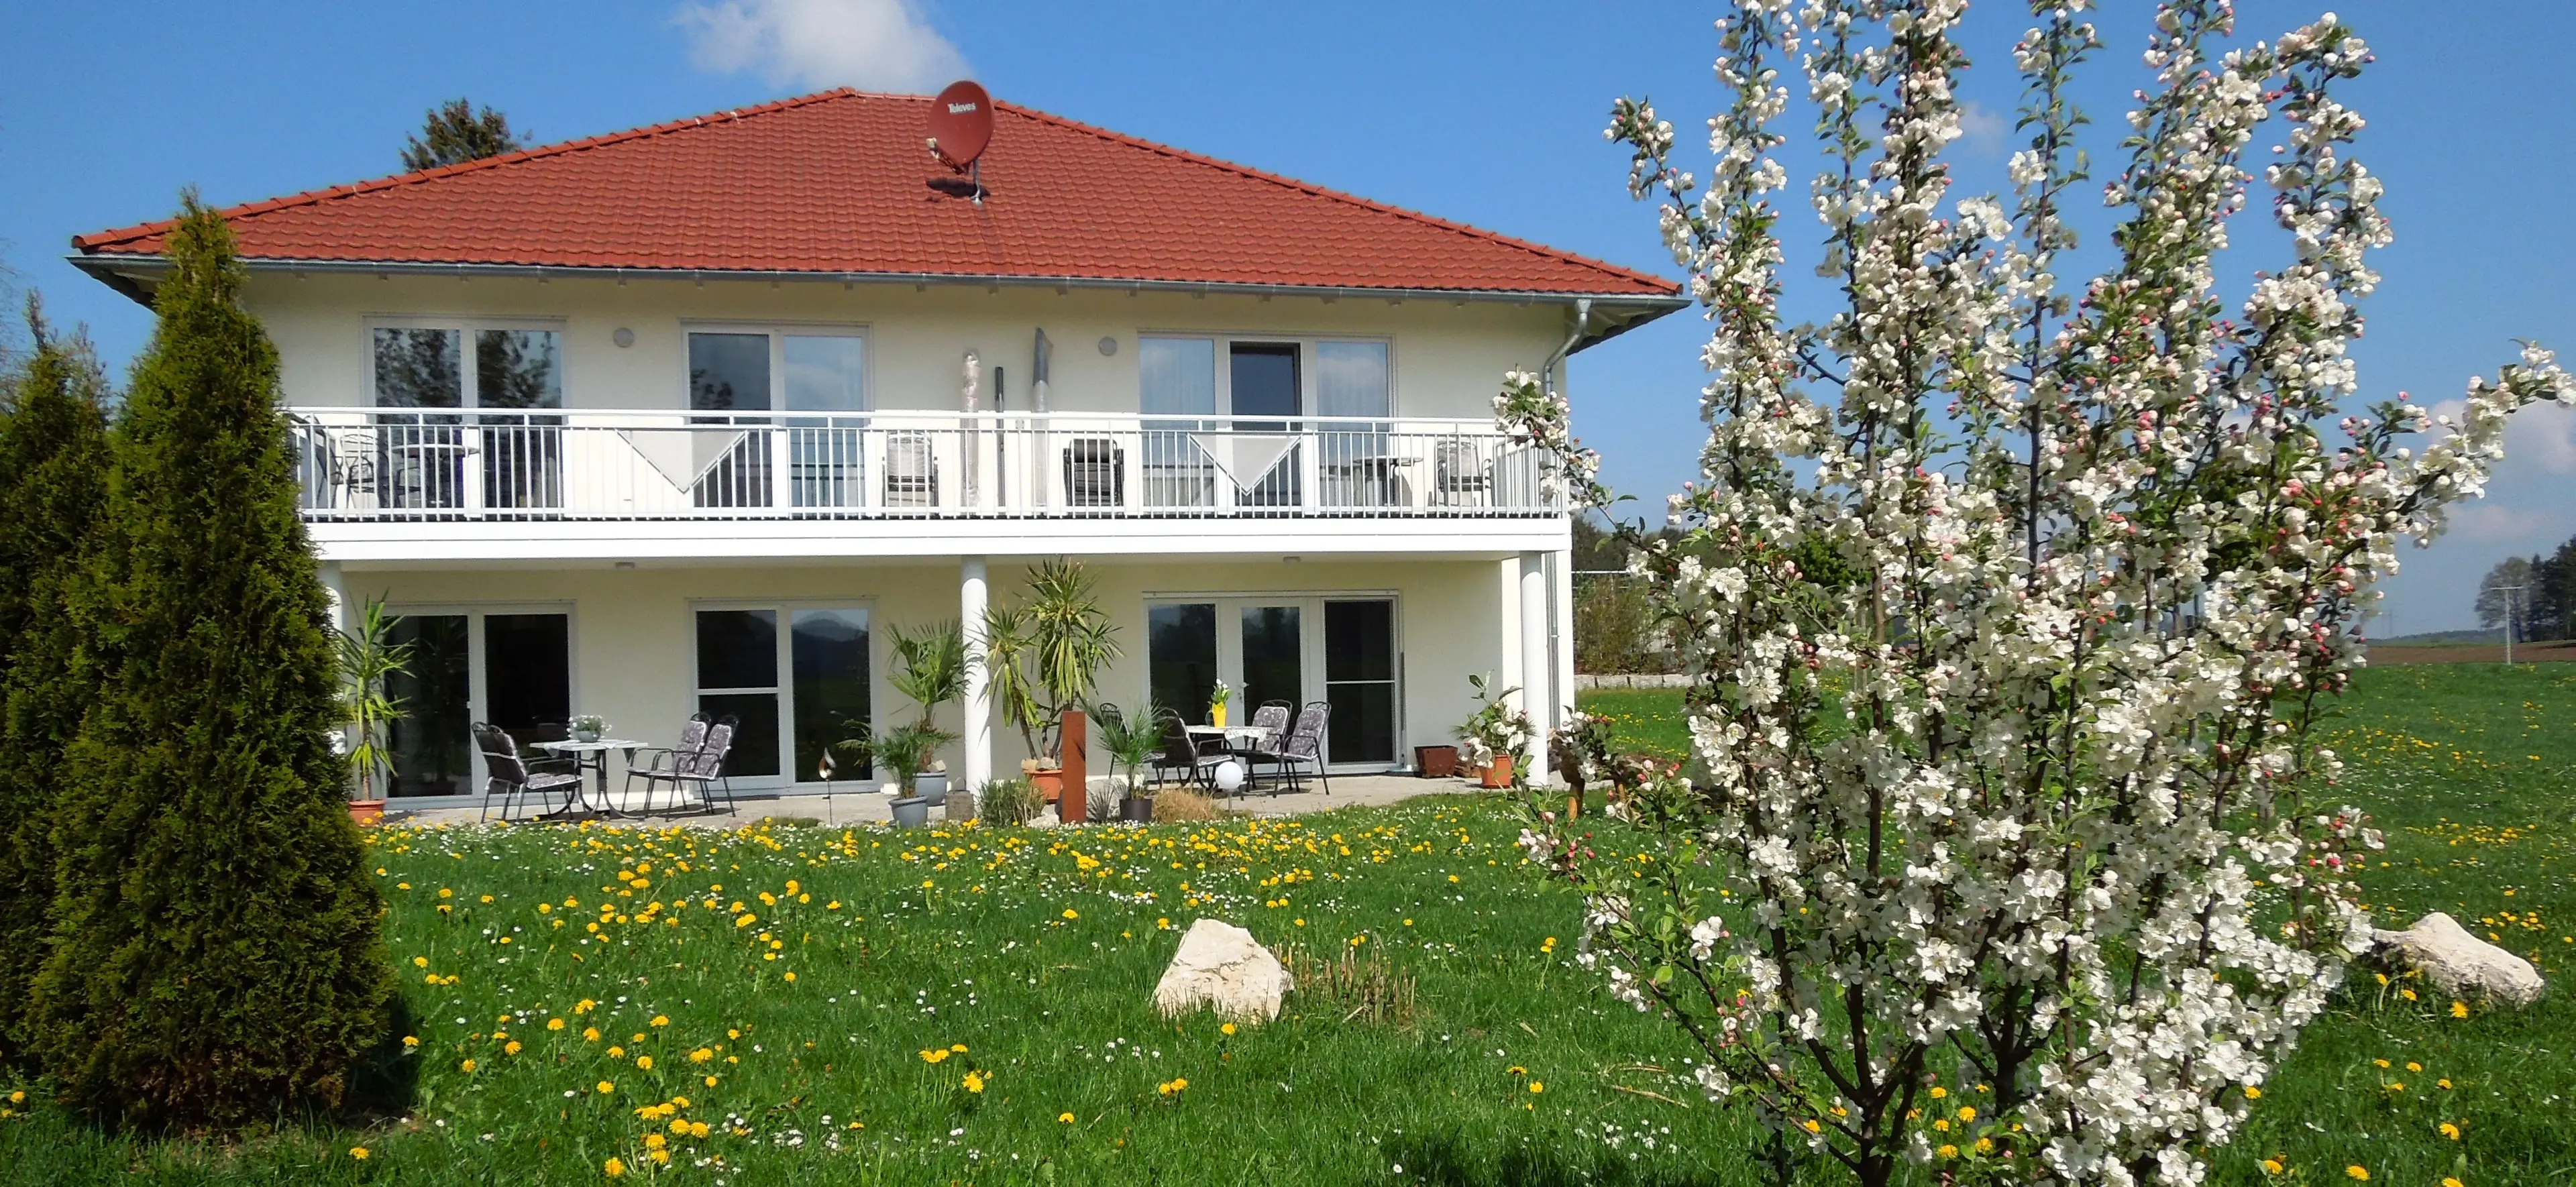 Ferienhaus in Bad Waldsee